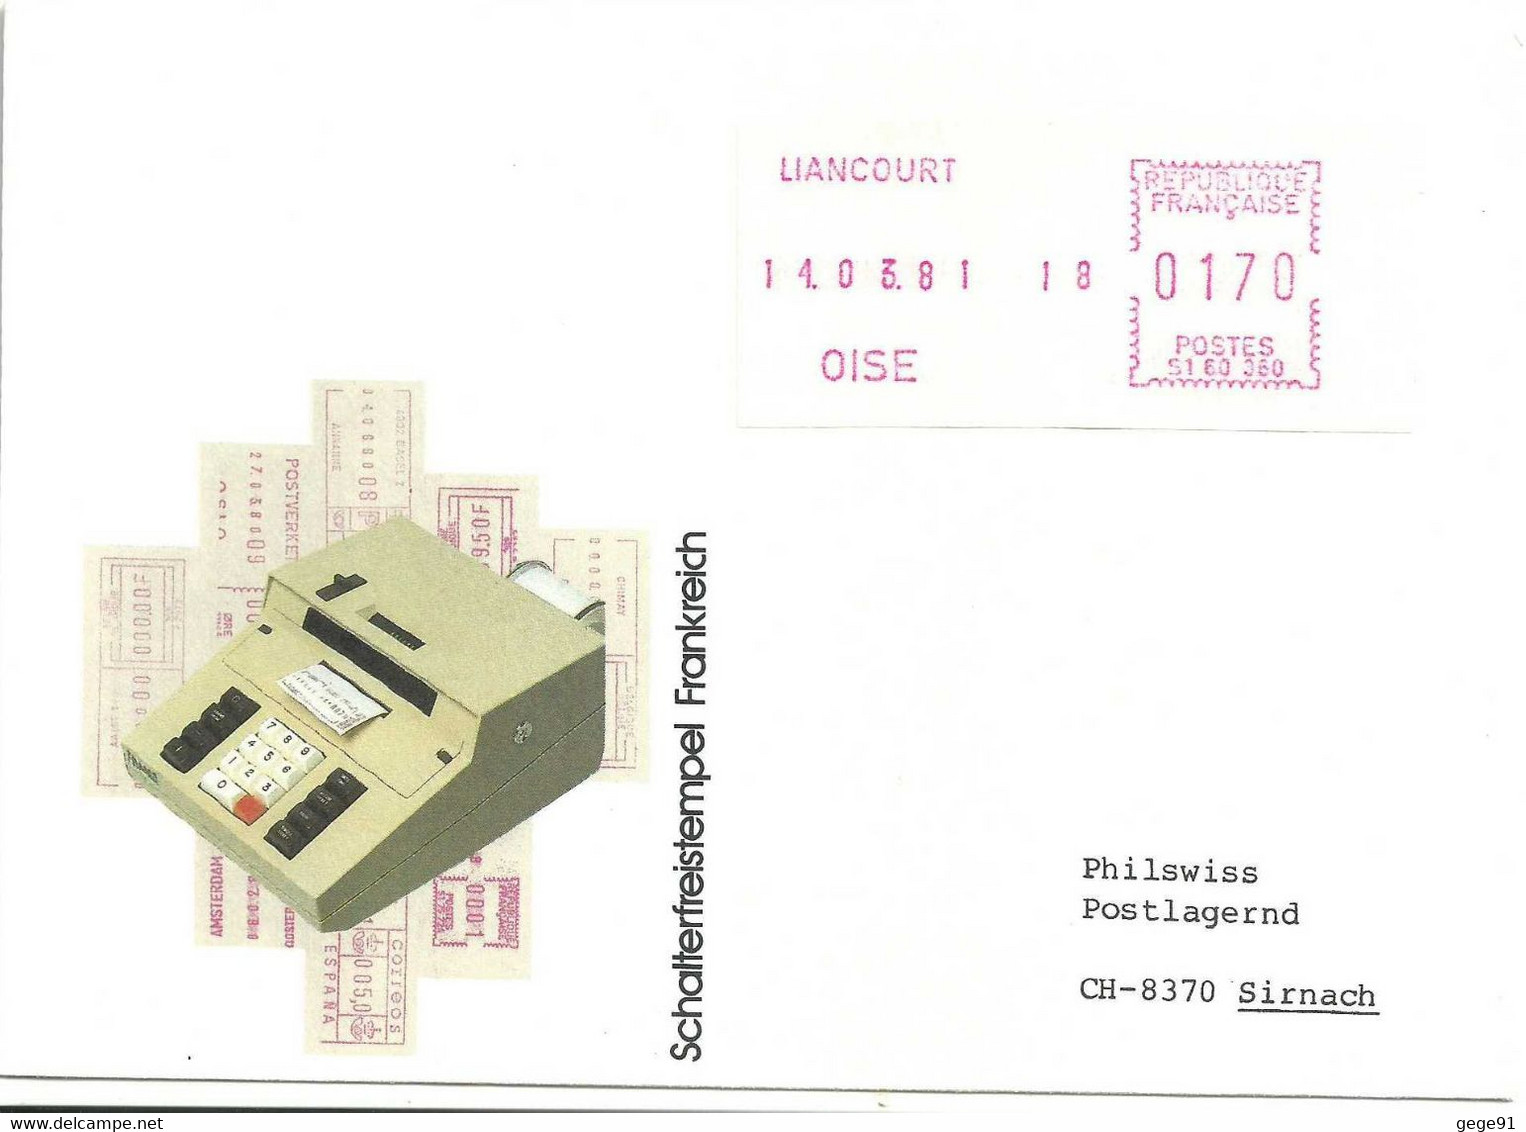 Vignette D'affranchissement De Guichet Satas Frama - Machine De Pré-série - Liancourt - Enveloppe Entière - 1969 Montgeron – Weißes Papier – Frama/Satas